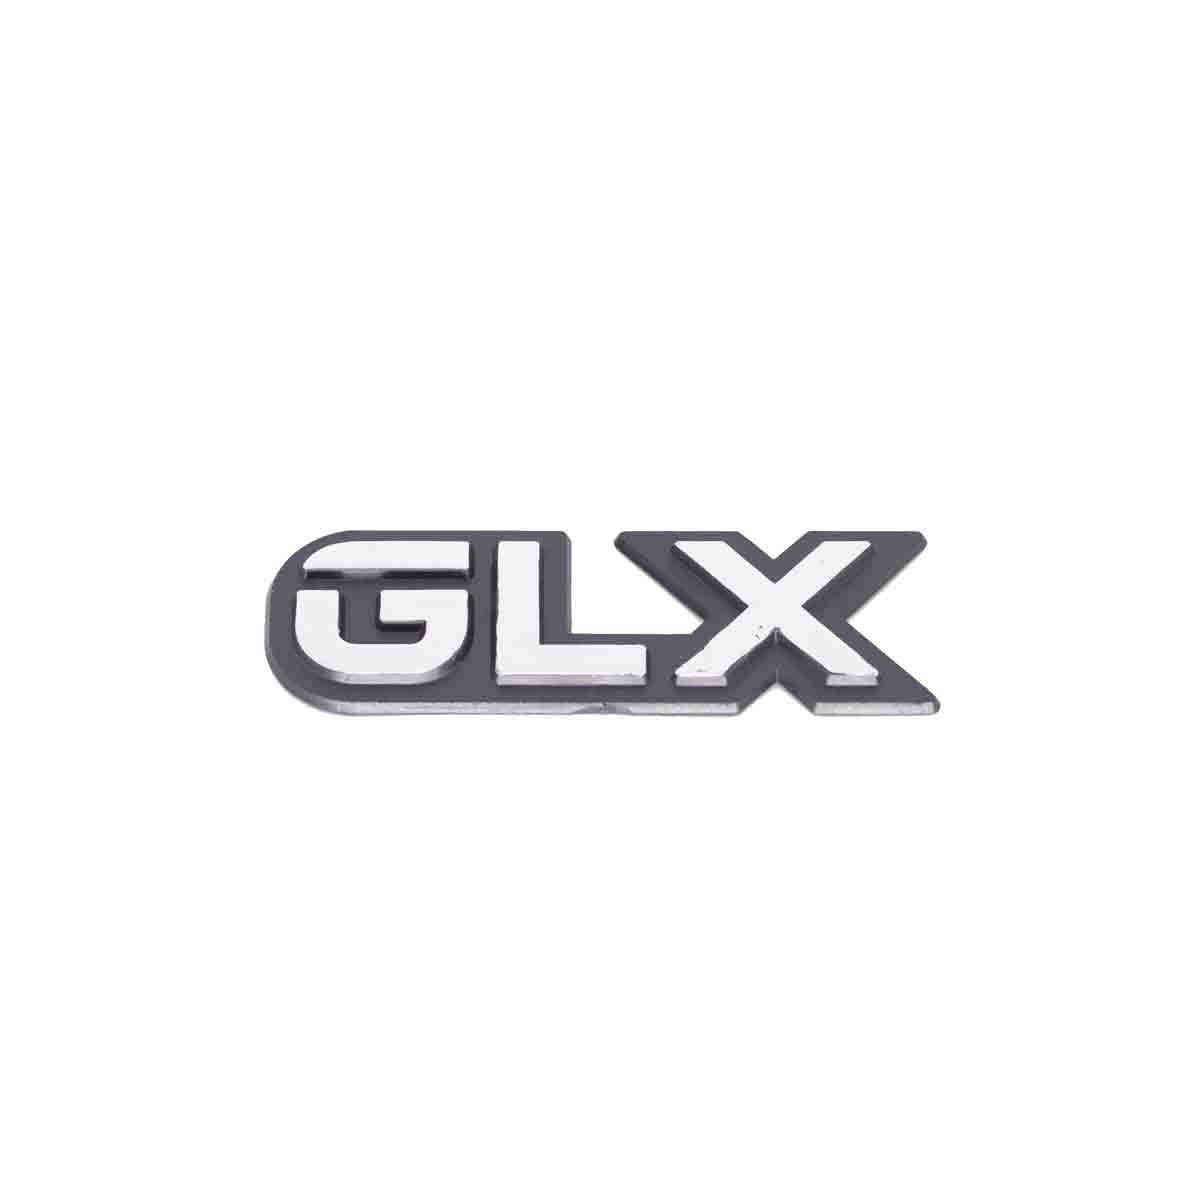 Emblema GLX Ford Antigo Brilhante Grande